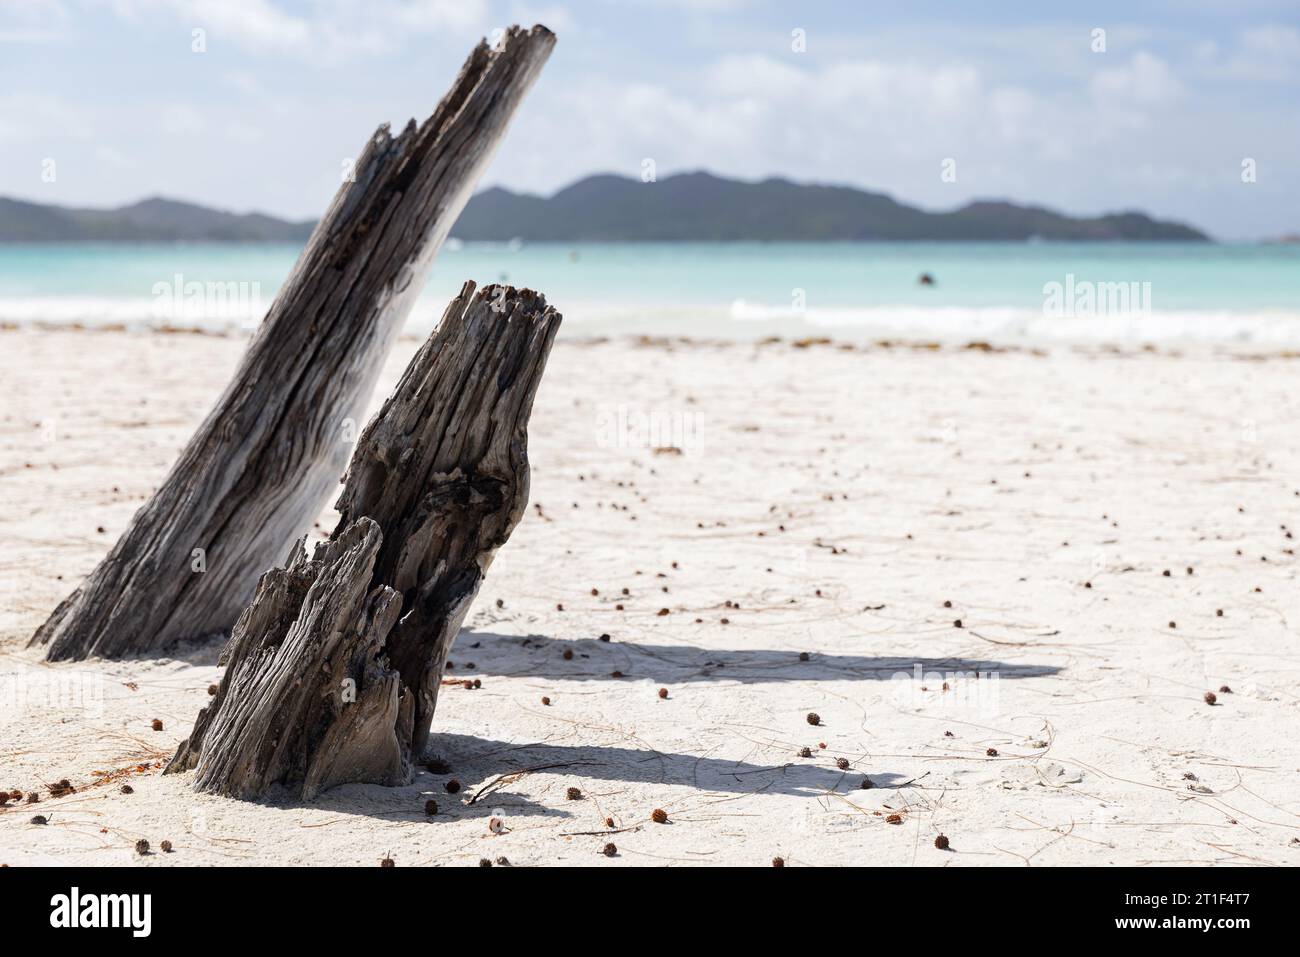 Vista costera con troncos de árboles secos en arena blanca en un día soleado de verano. Playa de Cote D'Or, isla de Praslin, Seychelles Foto de stock